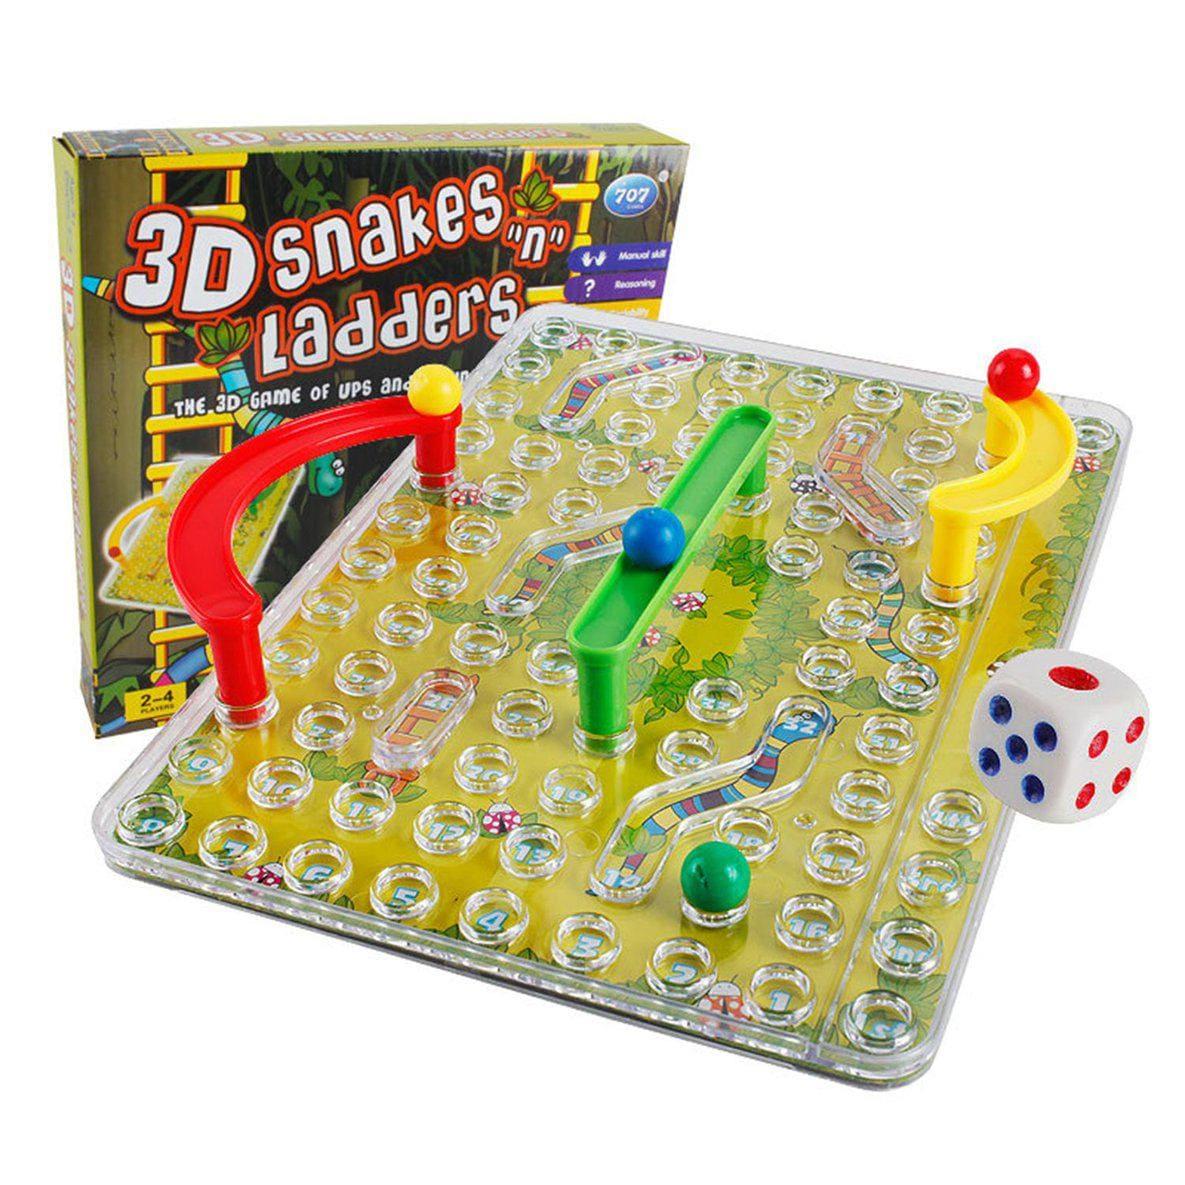 3D Snakes & Ladder